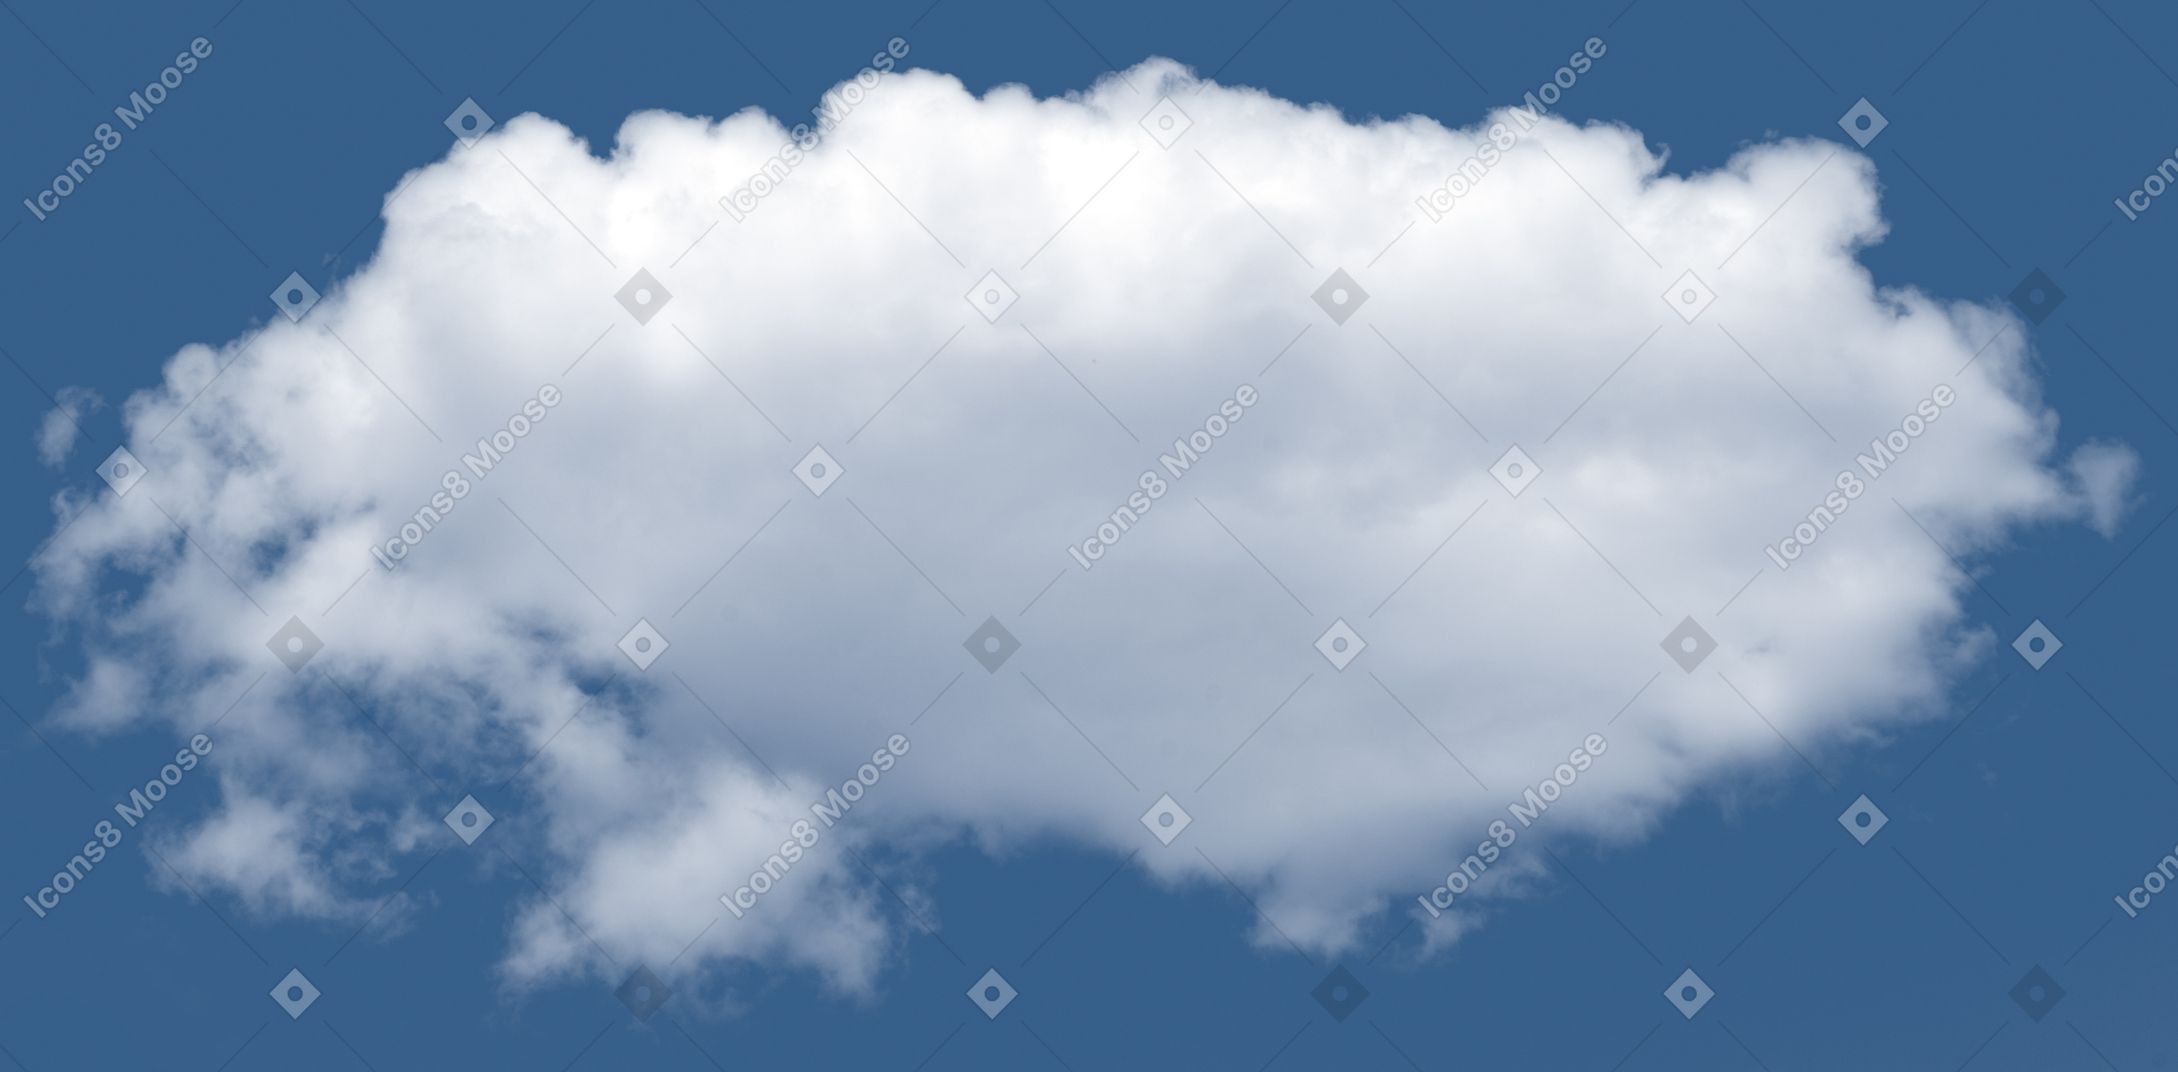 One cloud in a blue sky